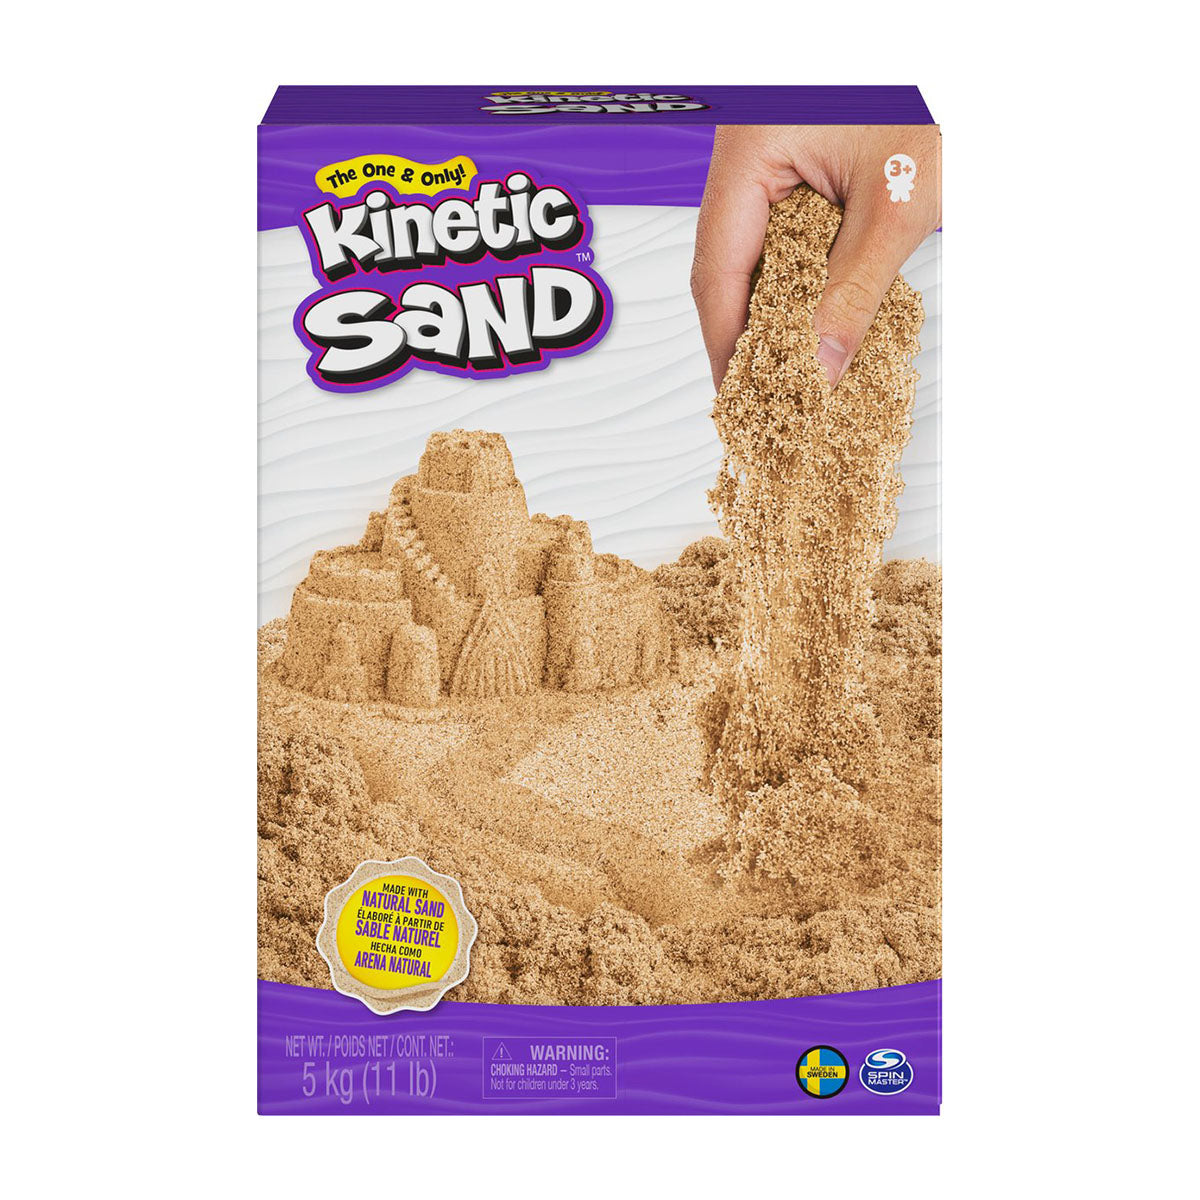 Met deze leuke Kinetic Sand brown 5 kg kan je kindje creëren wat hij of zij maar kan bedenken. Kinetic Sand is origineel, betoverend en magisch zand waarmee de creativiteit van je kindje optimaal geprikkeld wordt. VanZus